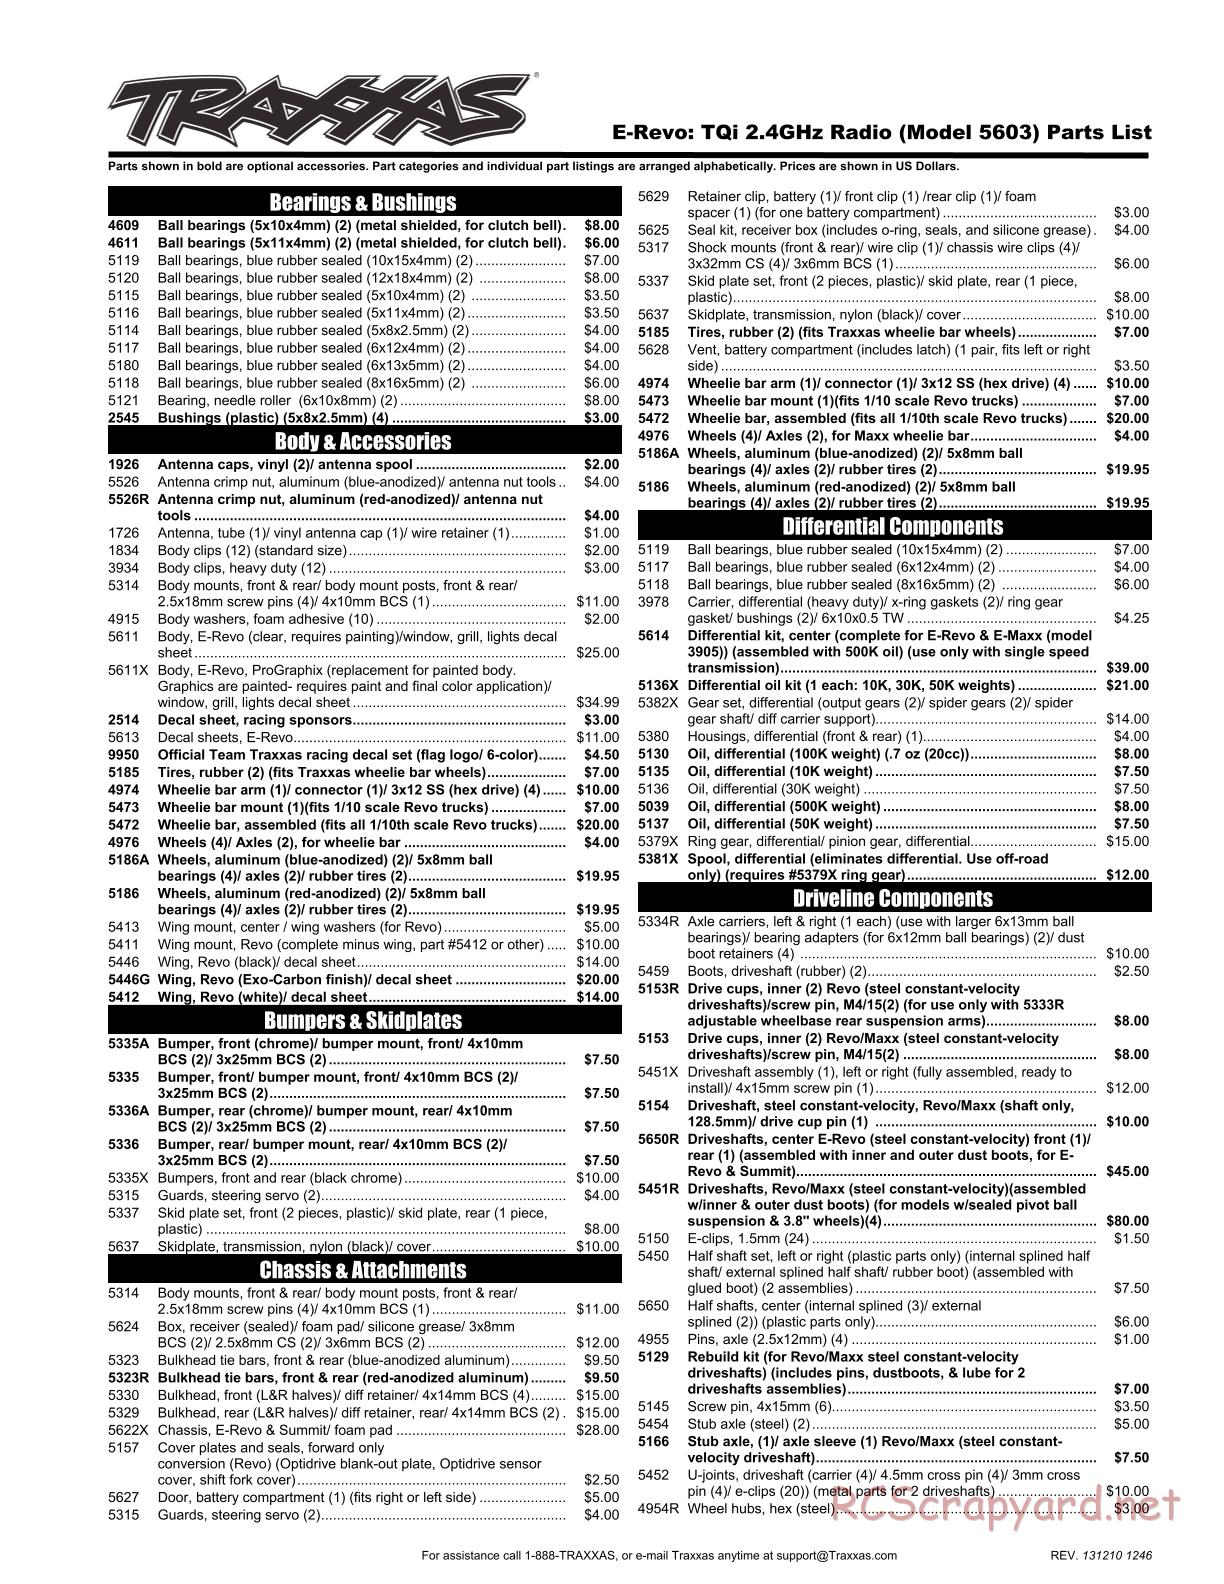 Traxxas - E-Revo (2010) - Parts List - Page 1